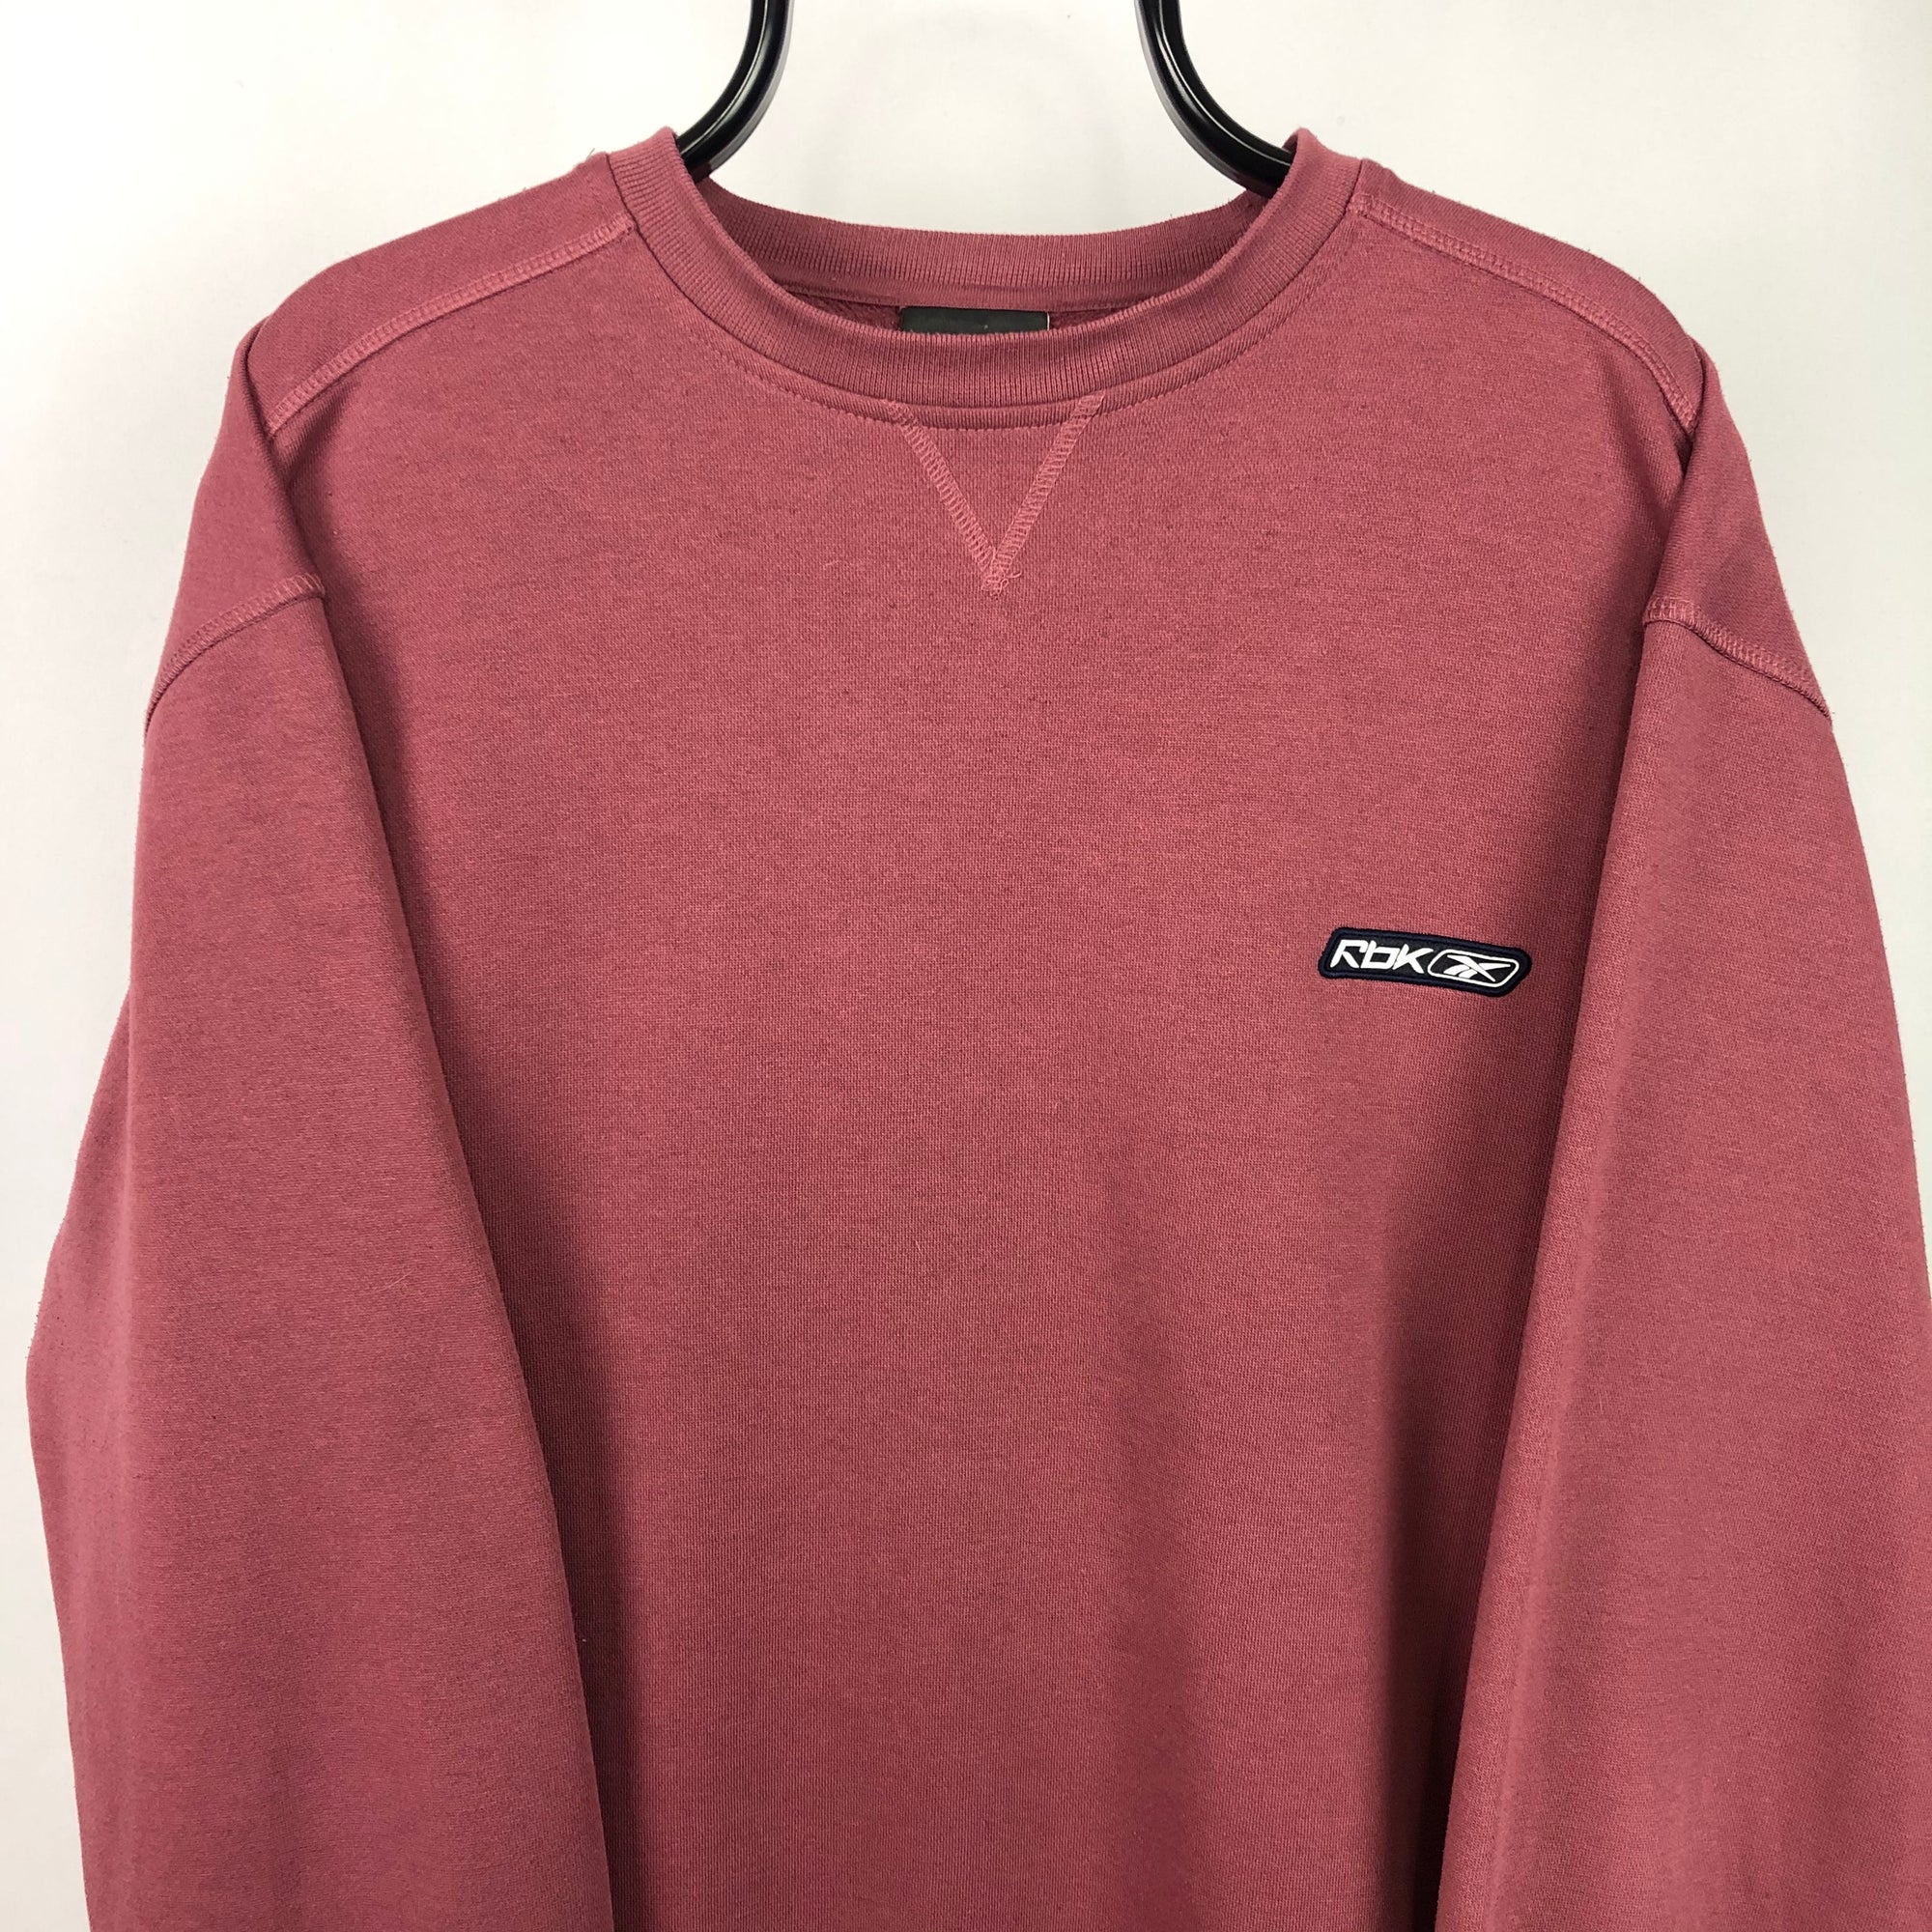 Vintage Reebok Small Logo Sweatshirt in Deep Pink - Men's XL/Women's XXL